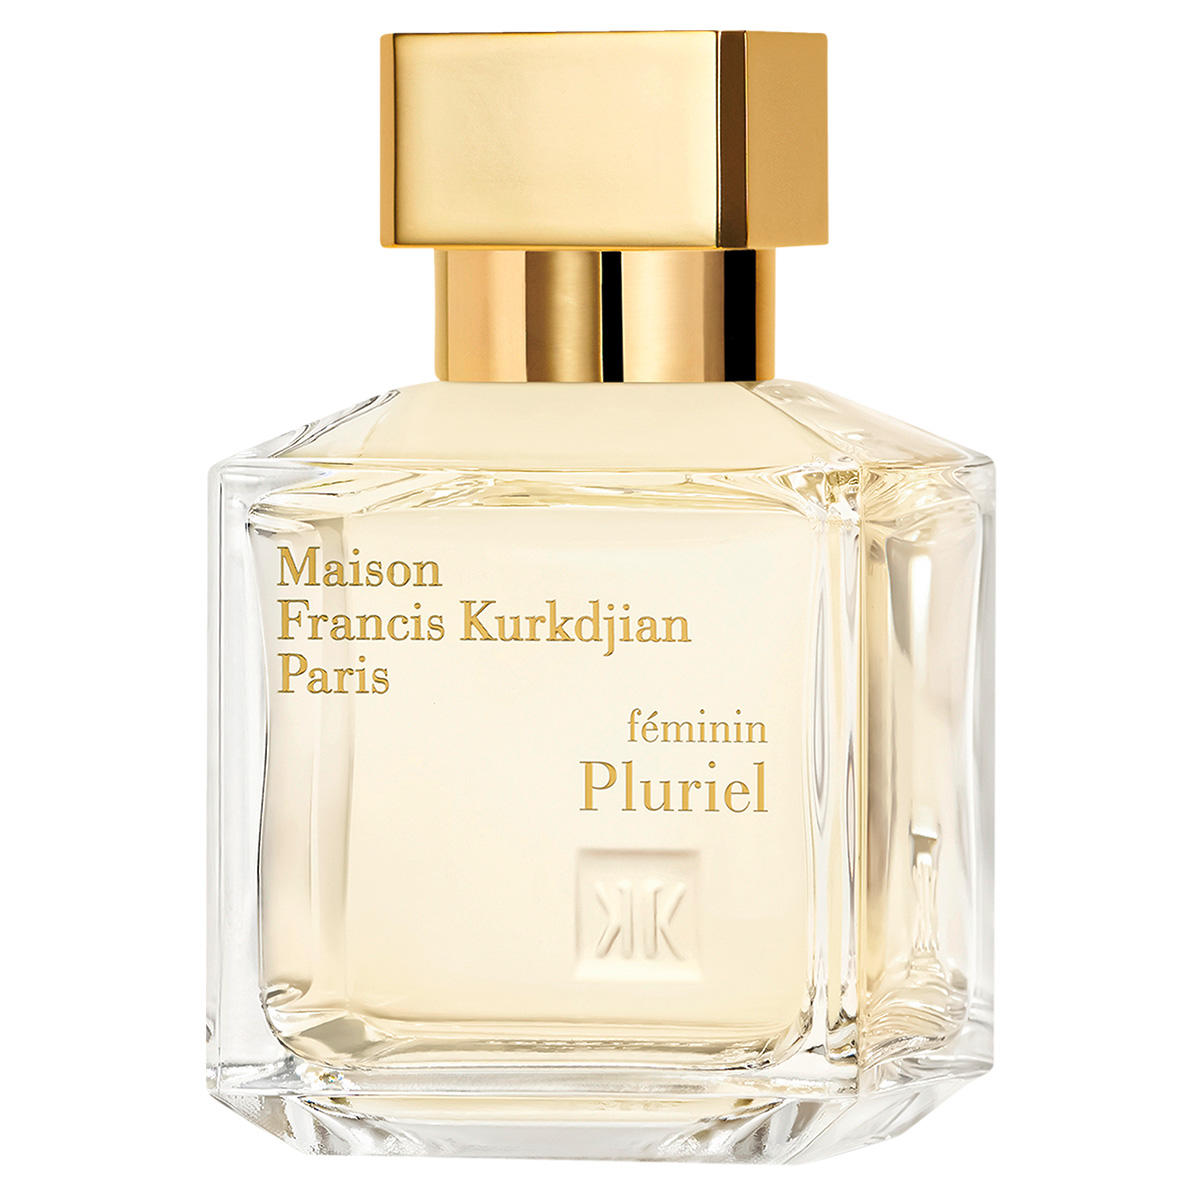 Maison Francis Kurkdjian Paris féminin Pluriel Eau de Parfum 70 ml - 2